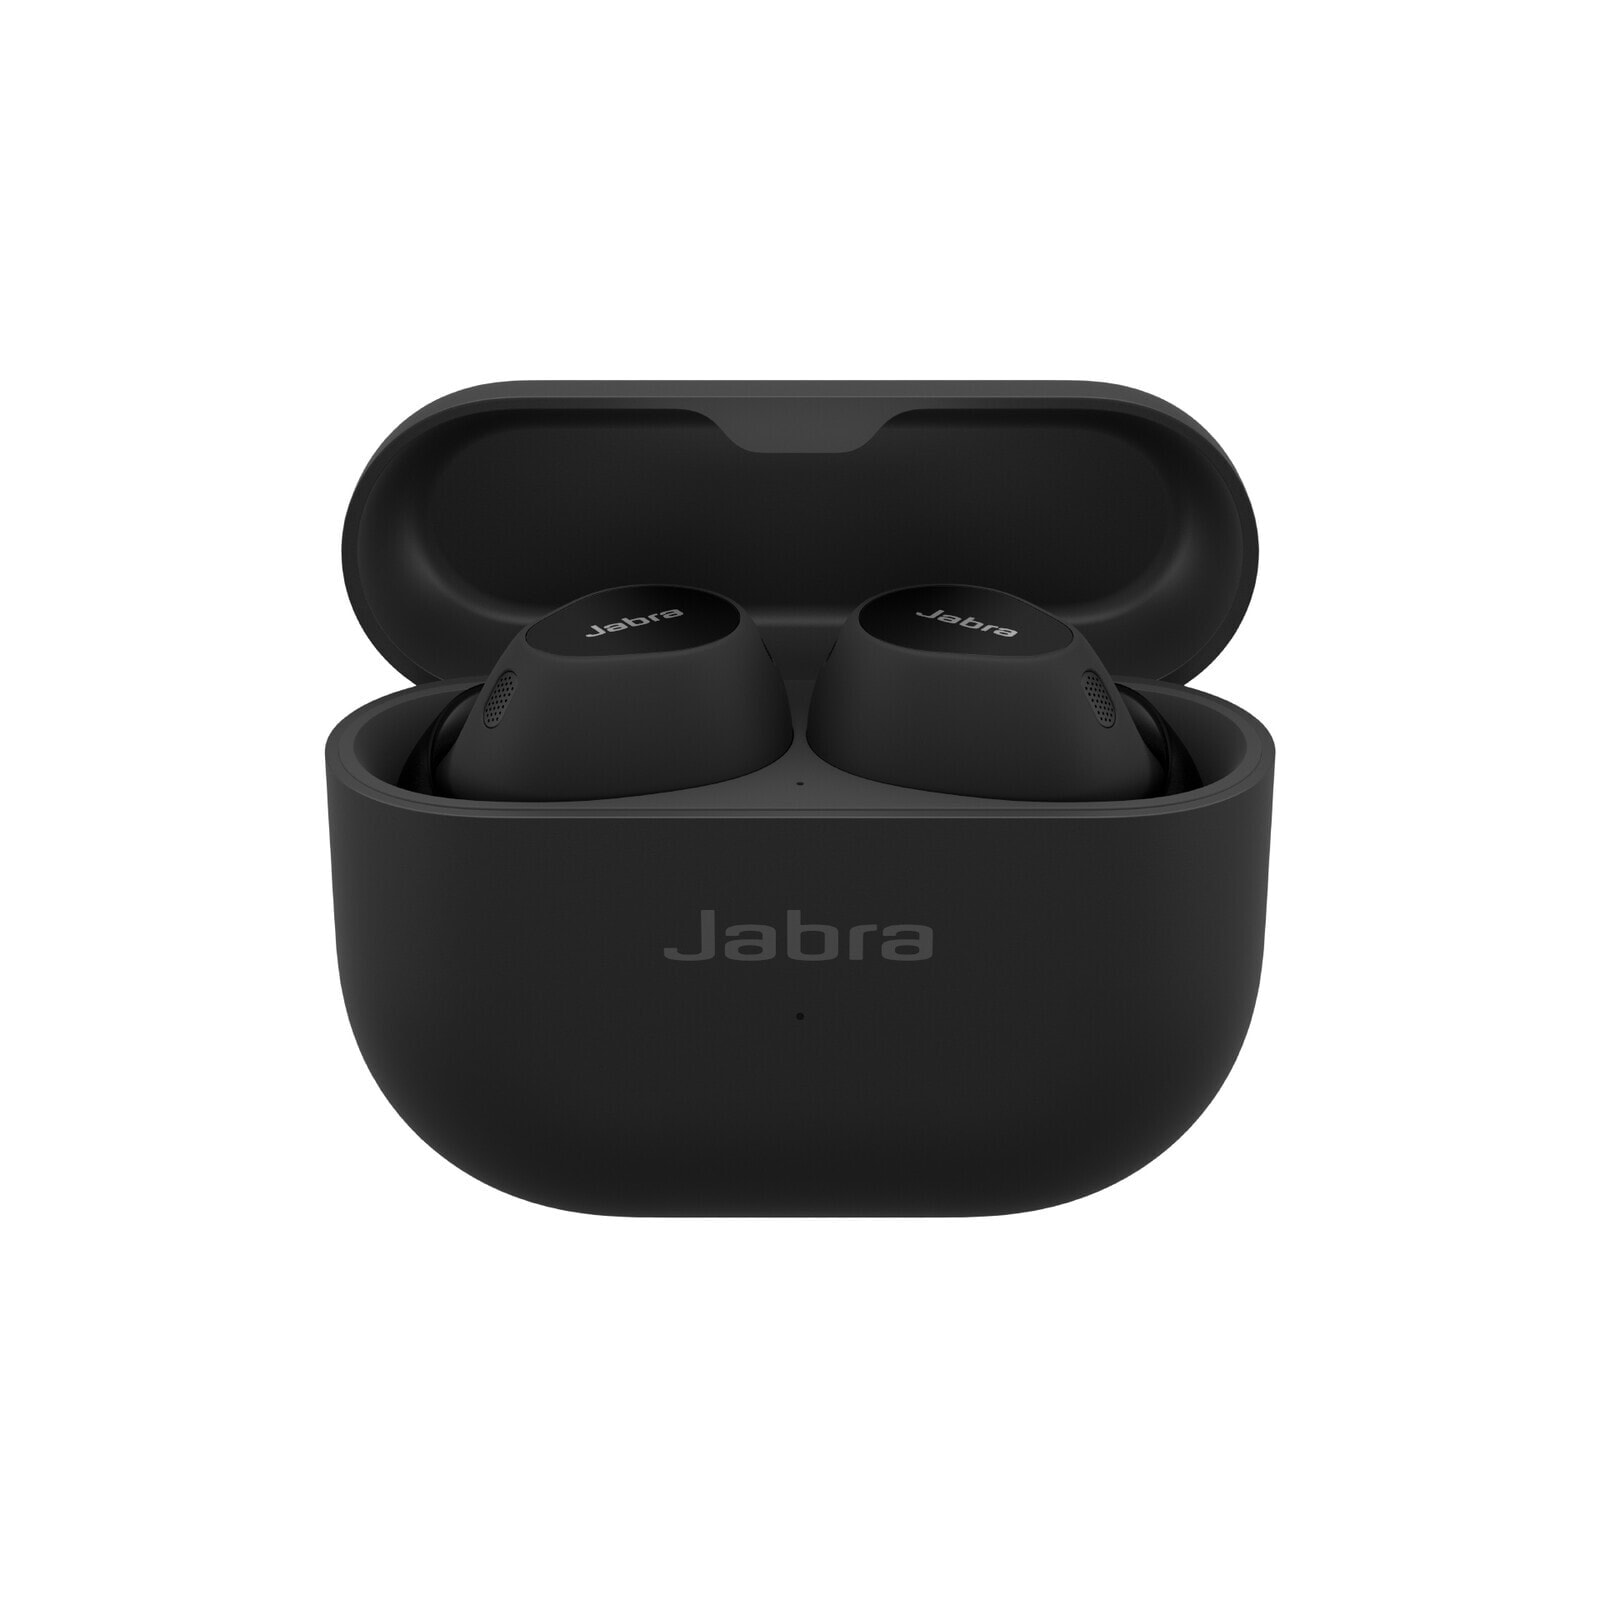 Jabra 100-99280904-99 наушники/гарнитура Беспроводной Вкладыши Calls/Music Bluetooth Черный